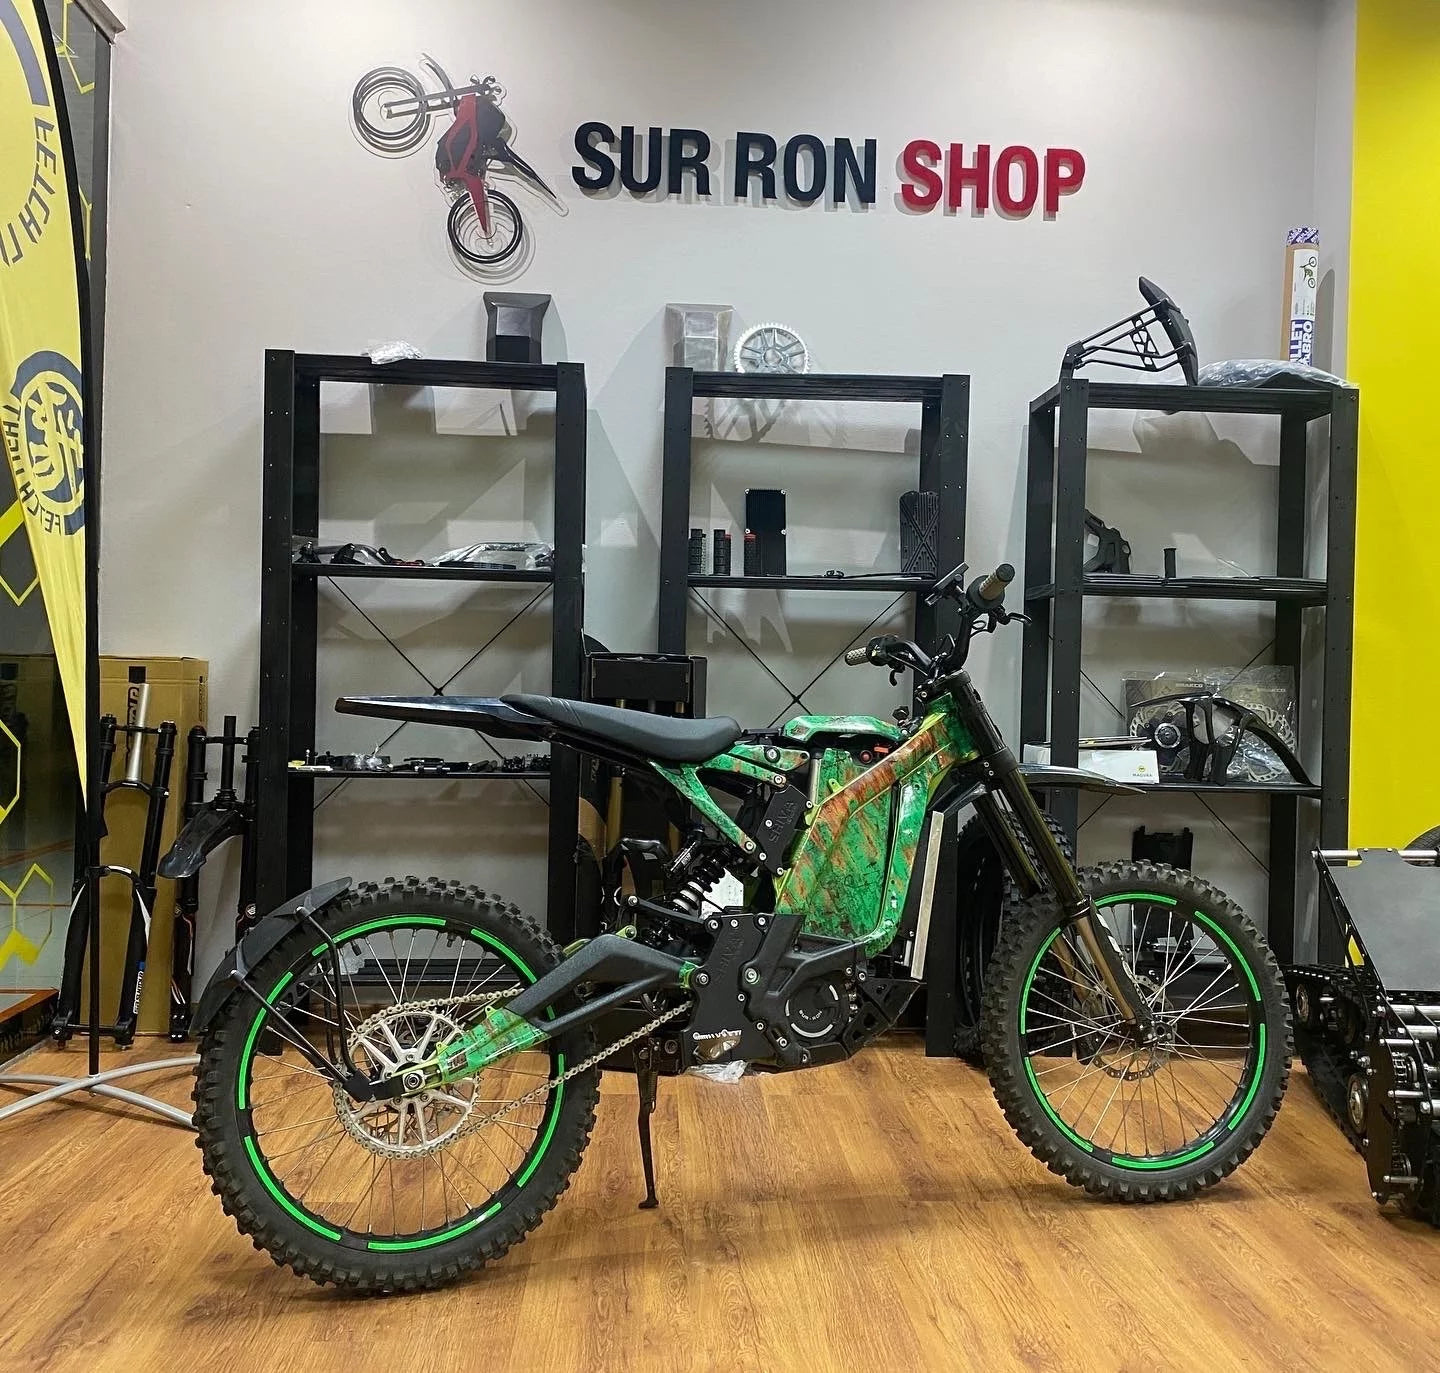 Sur-Ron XL kit SurRonshop